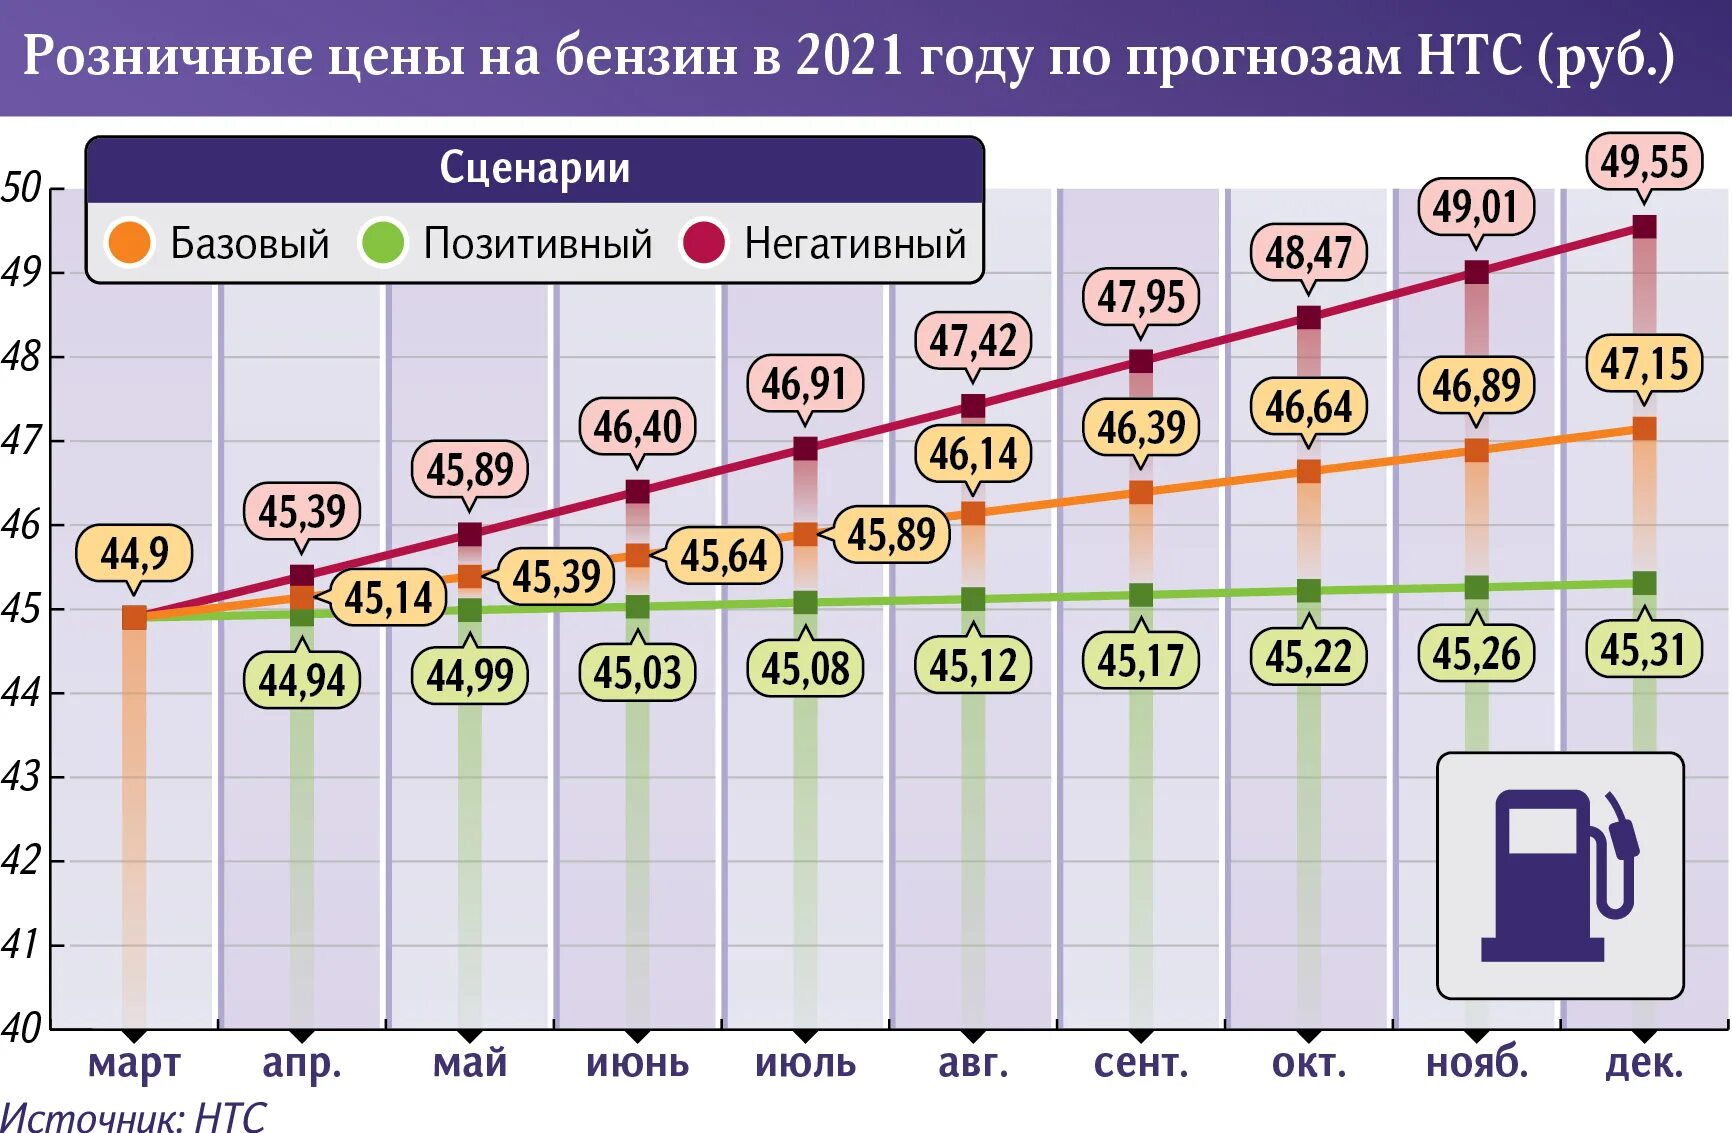 Динамика акцизов на бензин. Расценки бензина на 2021 год. Рост стоимости солярки по годам 2021. Рост бензина 2021. 1 июля 2017 г